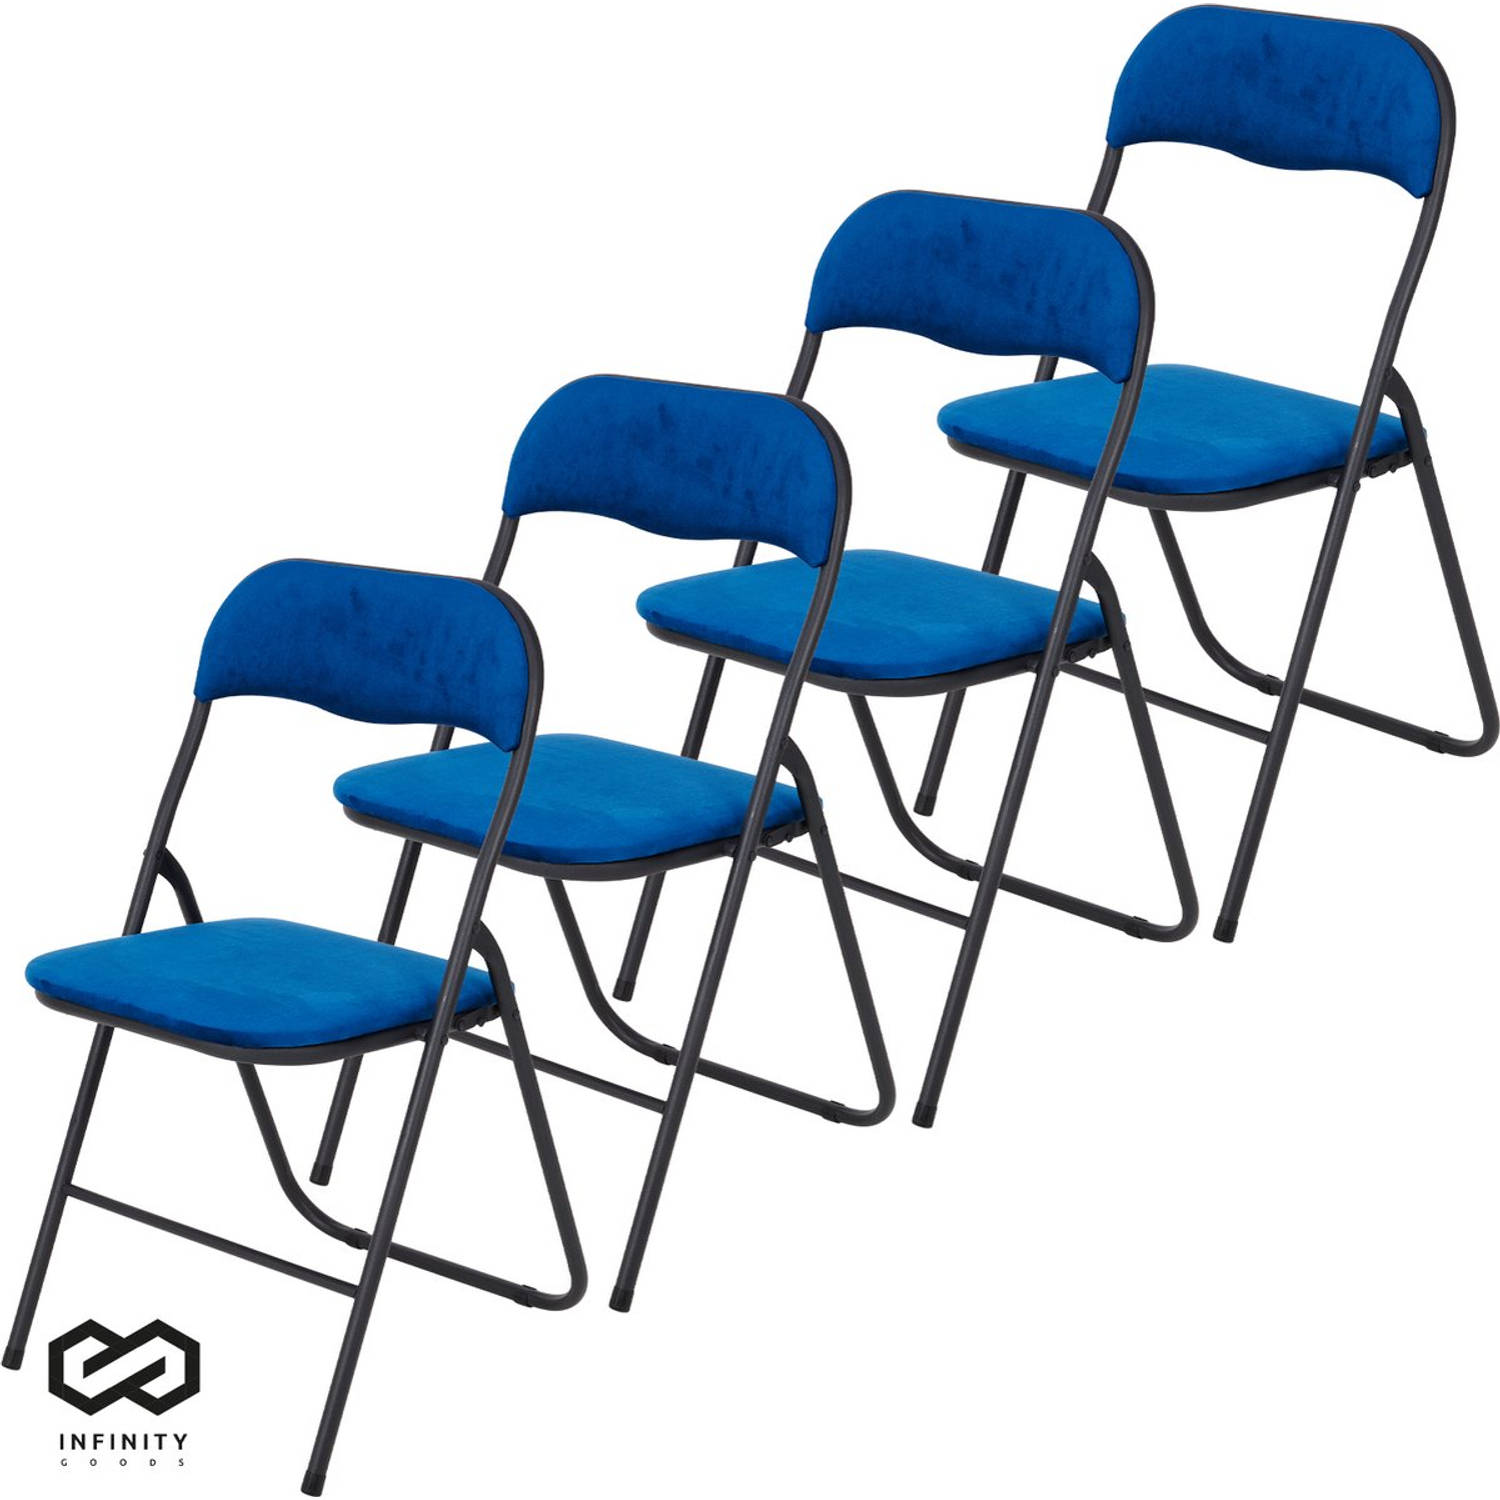 Infinity Goods Klapstoelen - Set van 4 - Vouwstoelen - Fluweel - Eettafelstoelen - Opklapbare Stoelen - 43 x 47 x 80 CM - Stoelen - Blauw